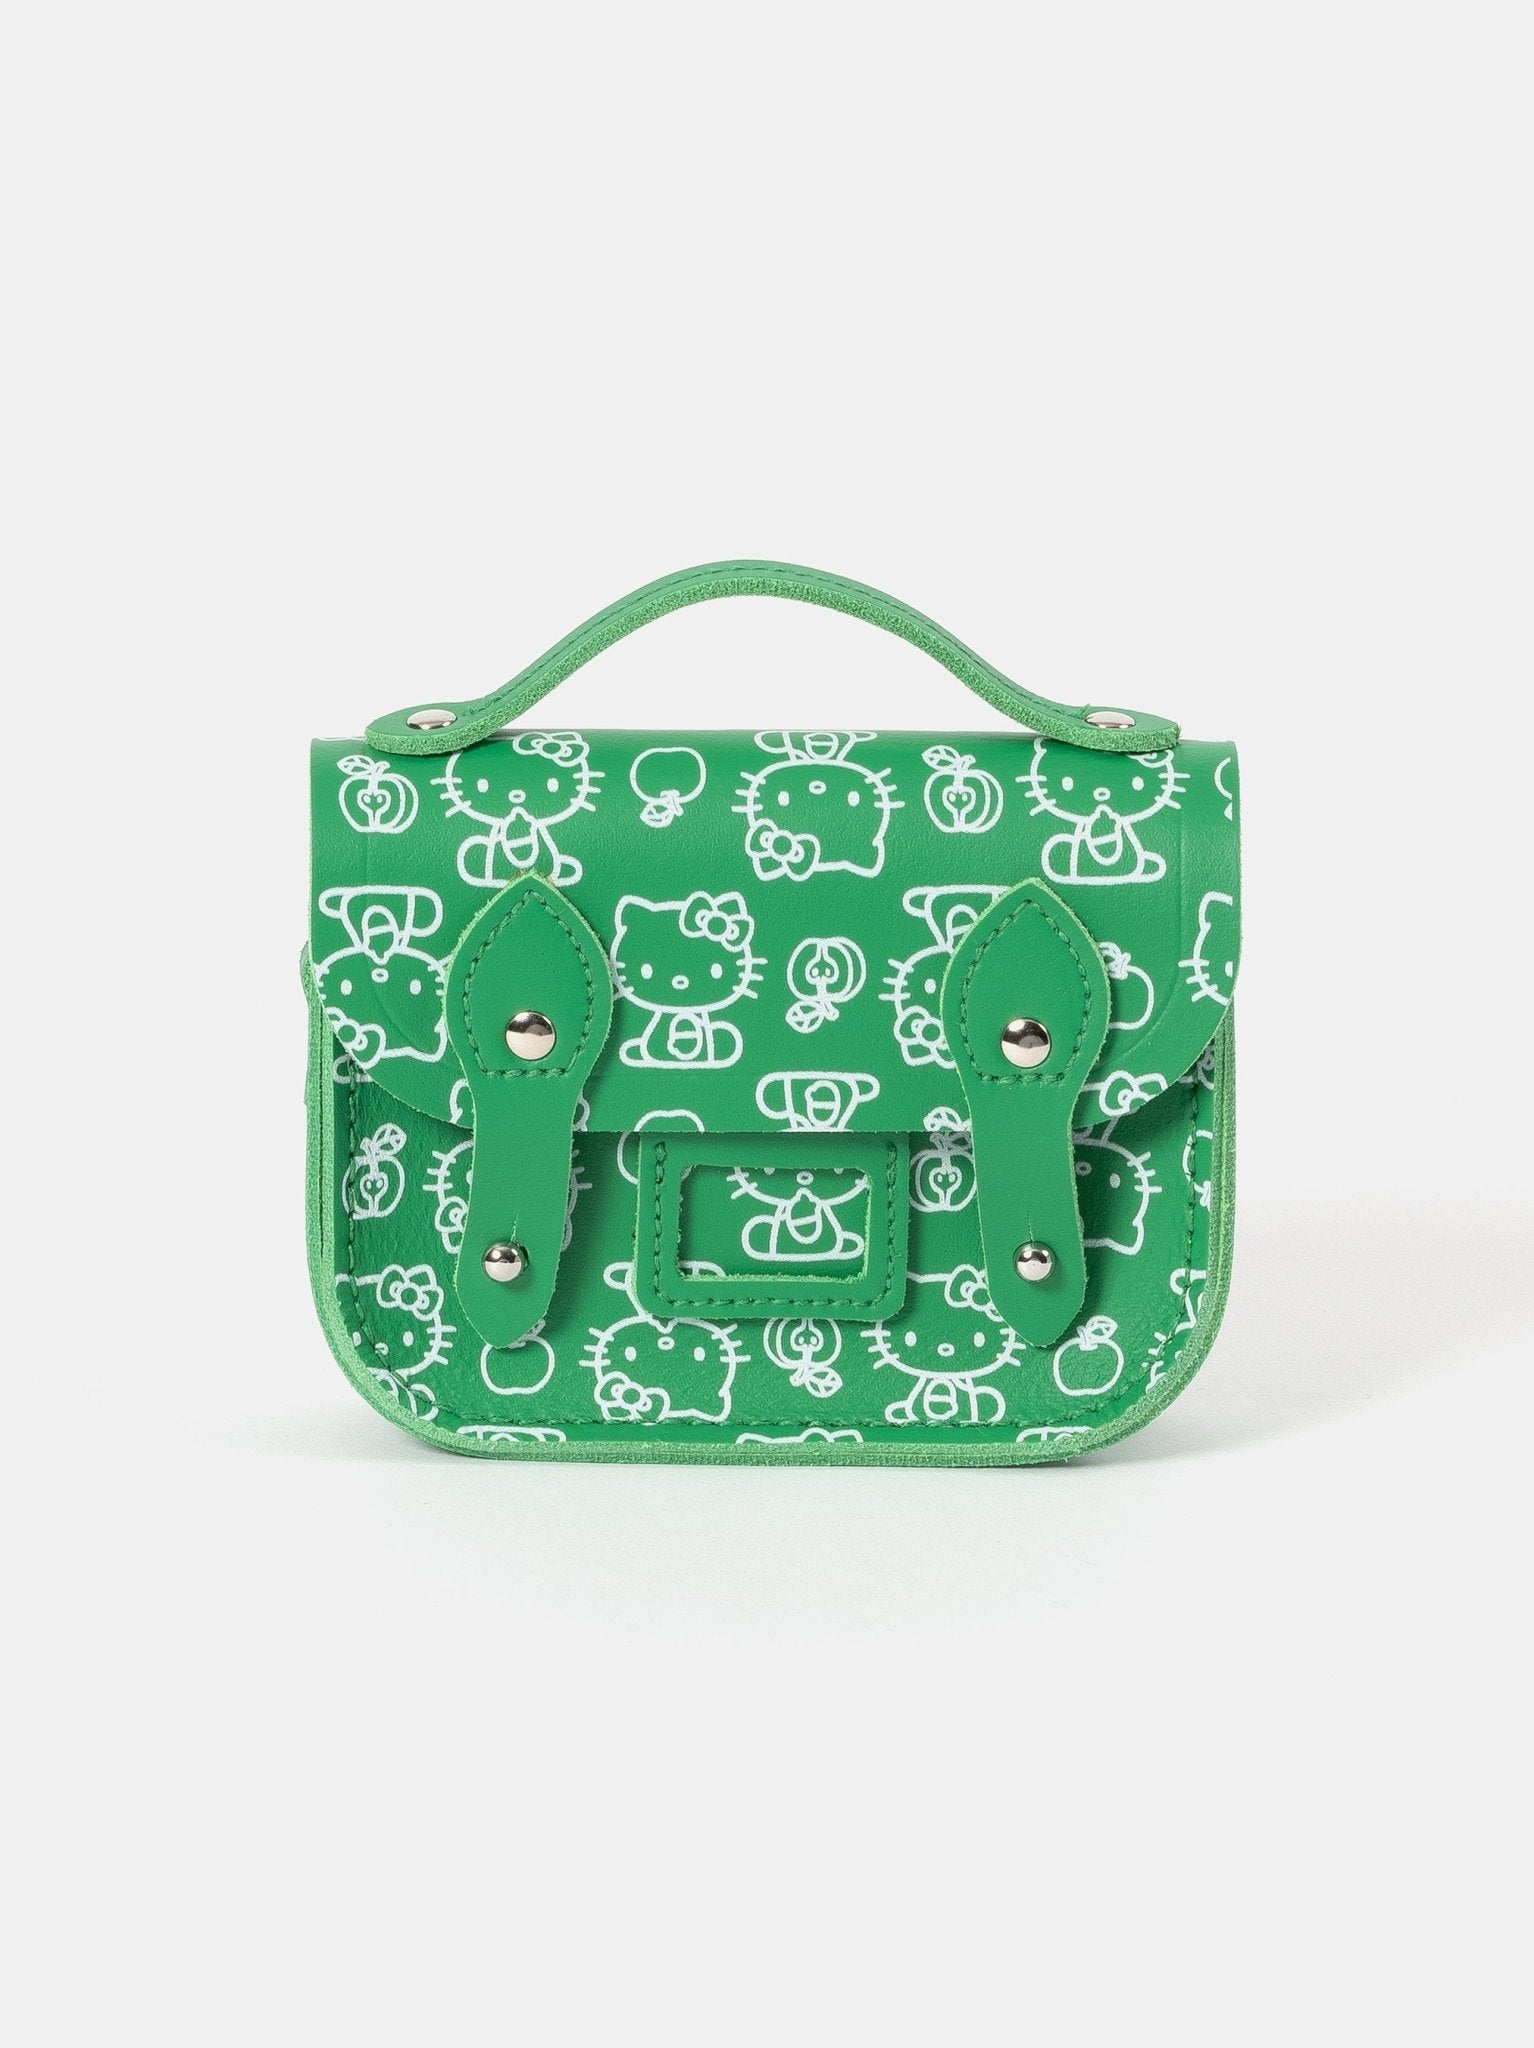 The Hello Kitty Micro Satchel - Apple Green